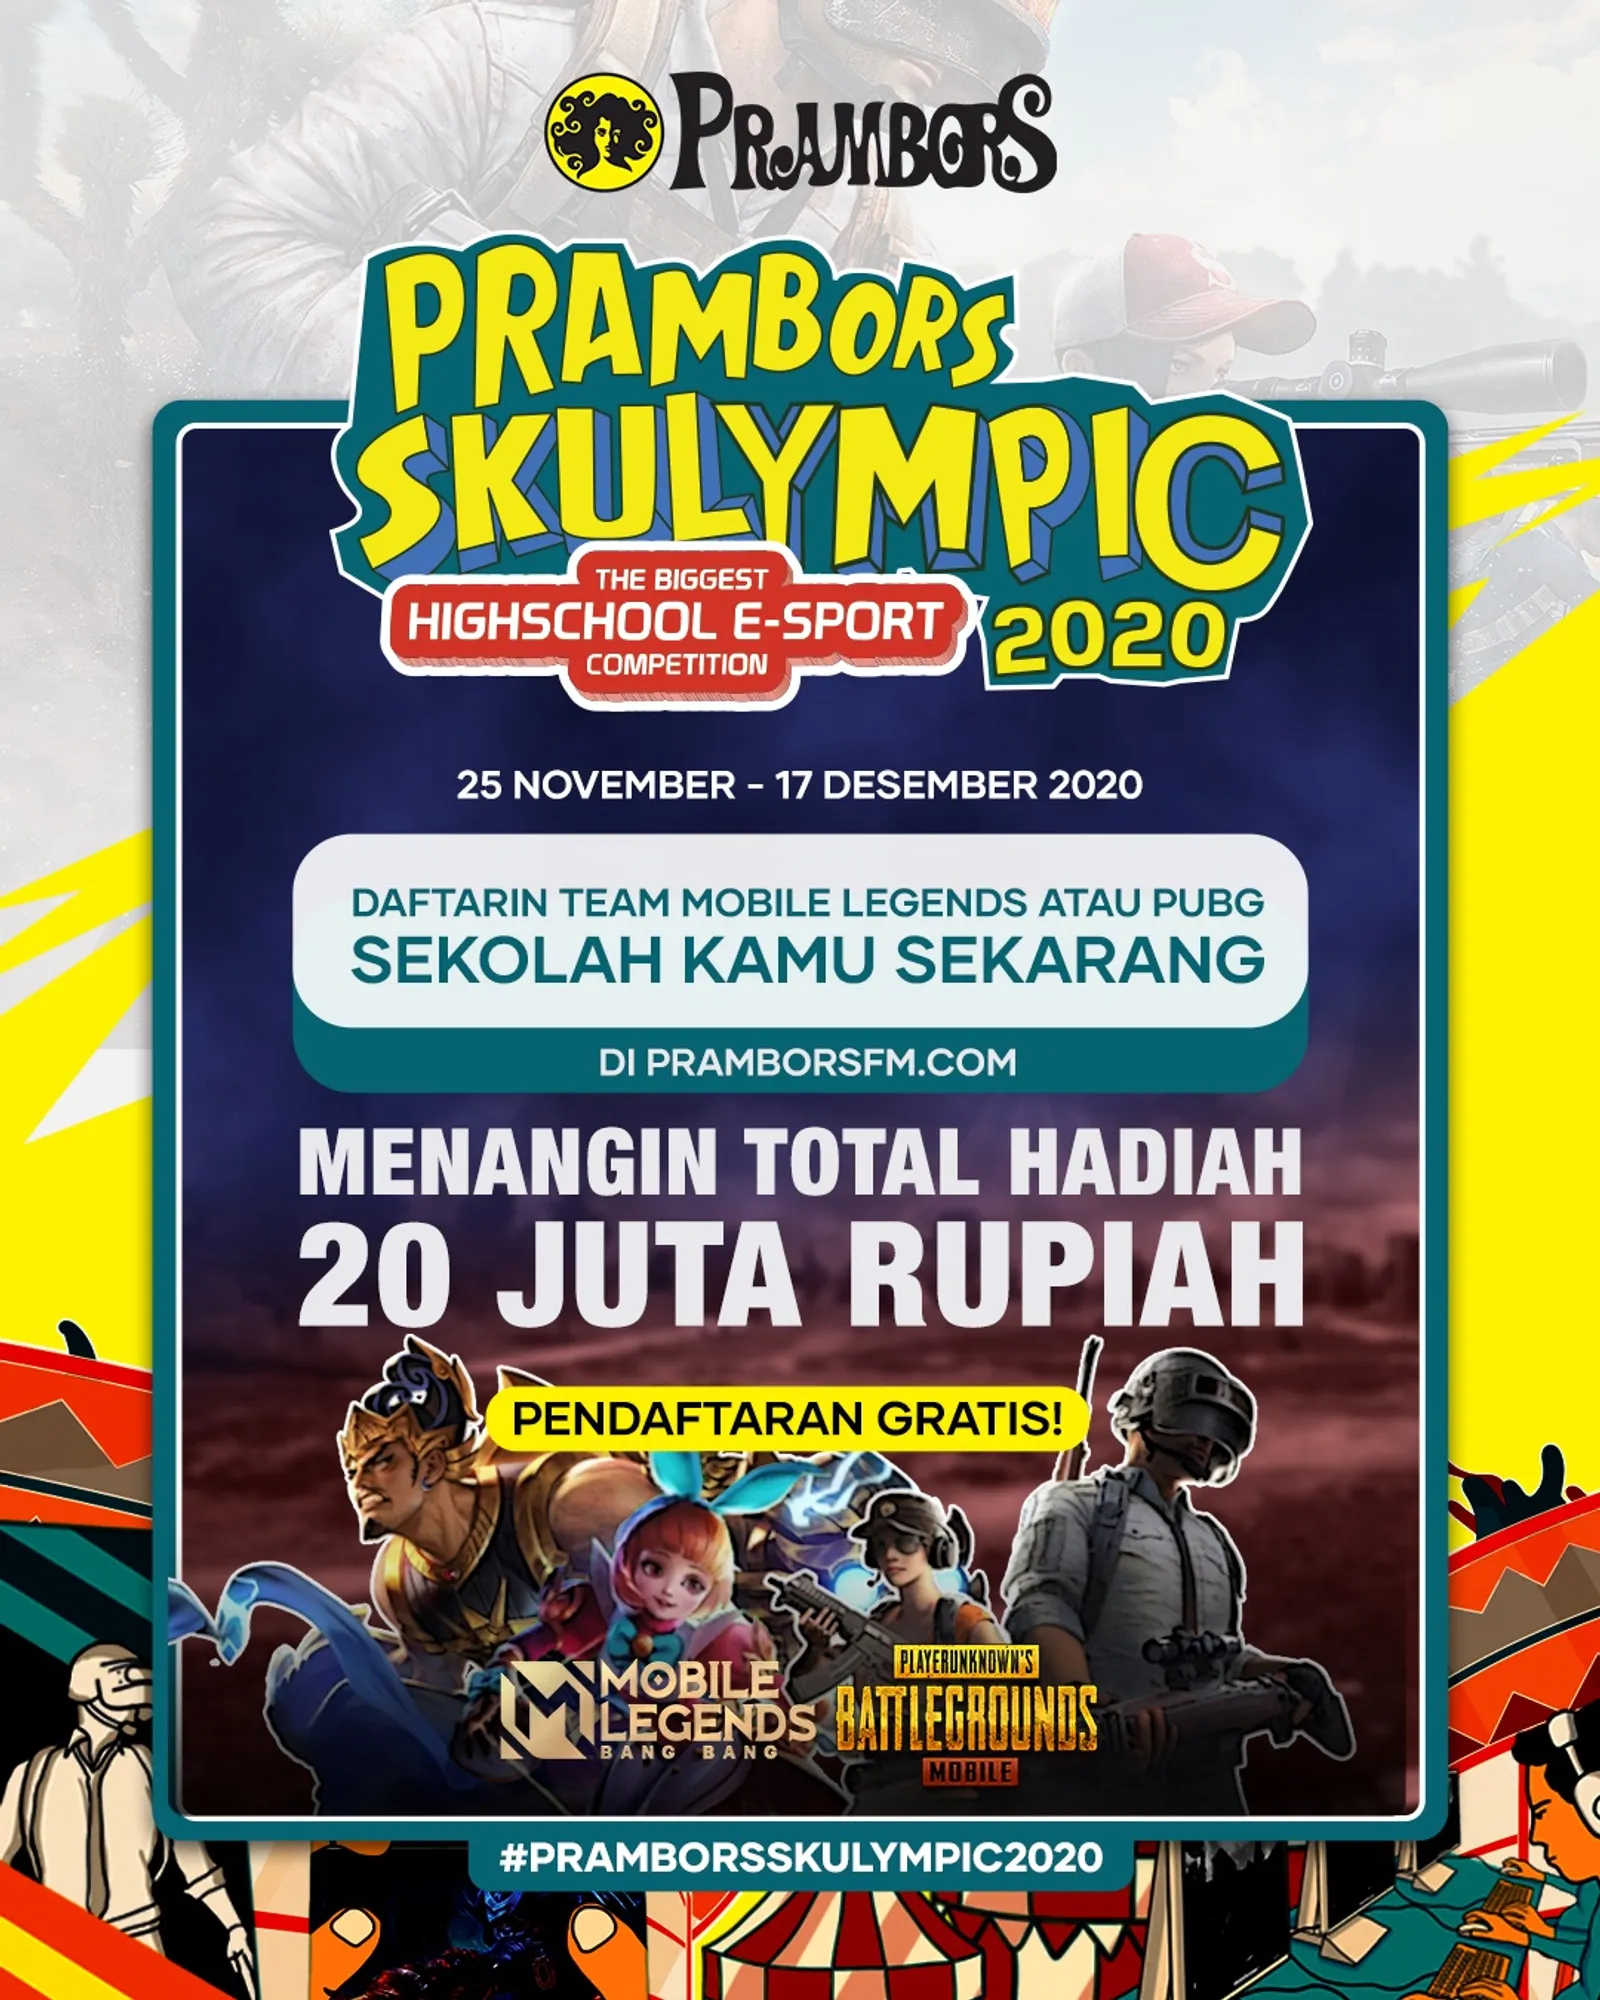 Dukung E-Sports Indonesia, Prambors Selenggarakan Kompetisi Skulympic